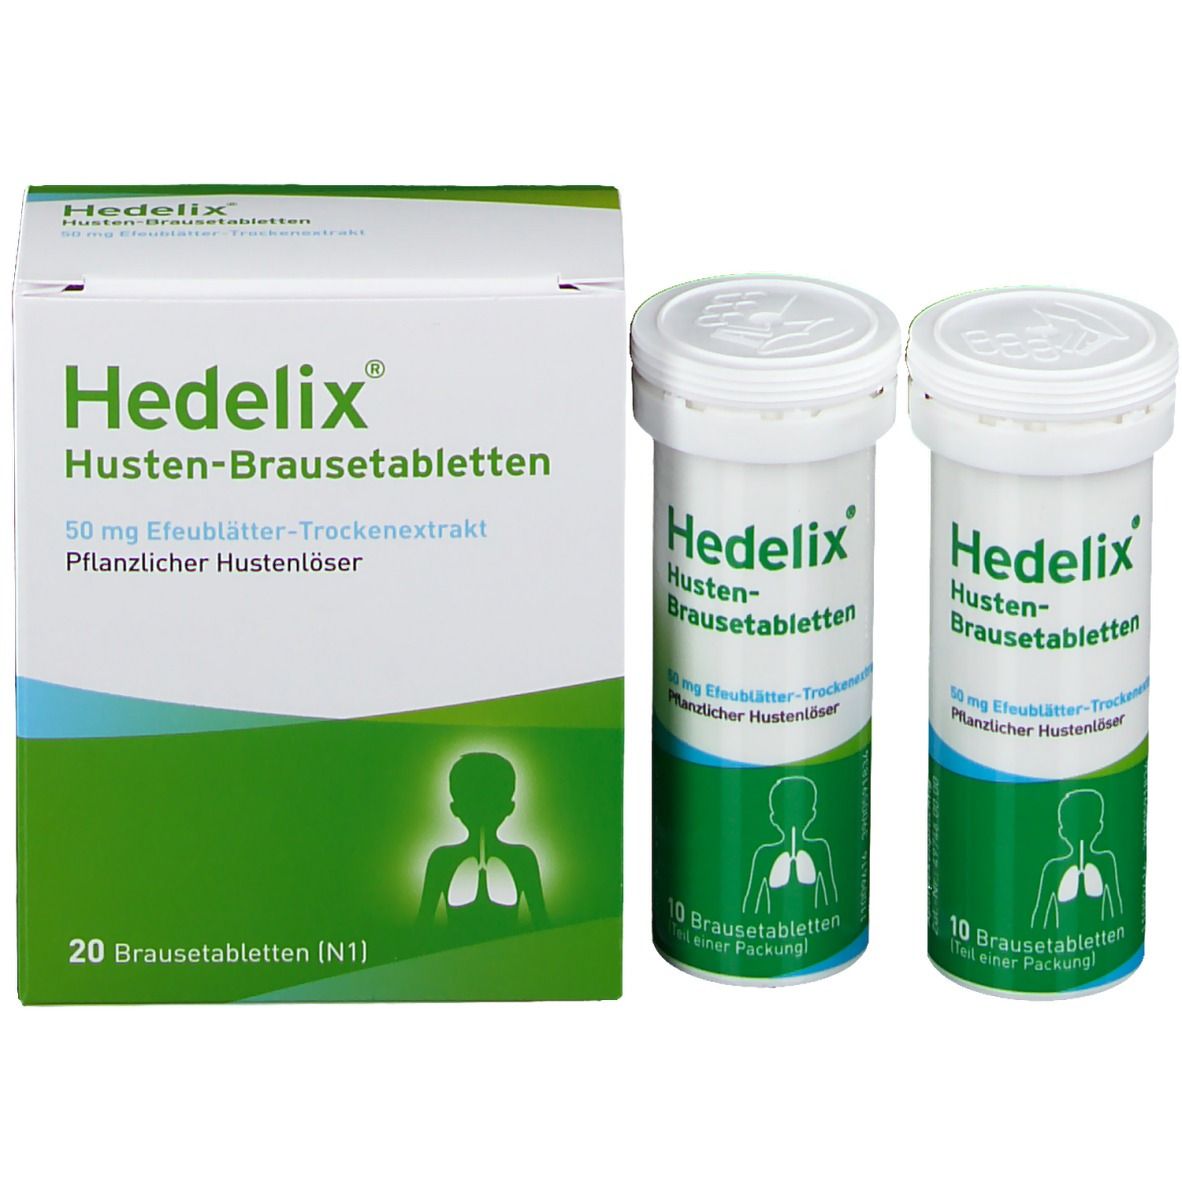 Hedelix® Husten-Brausetabletten